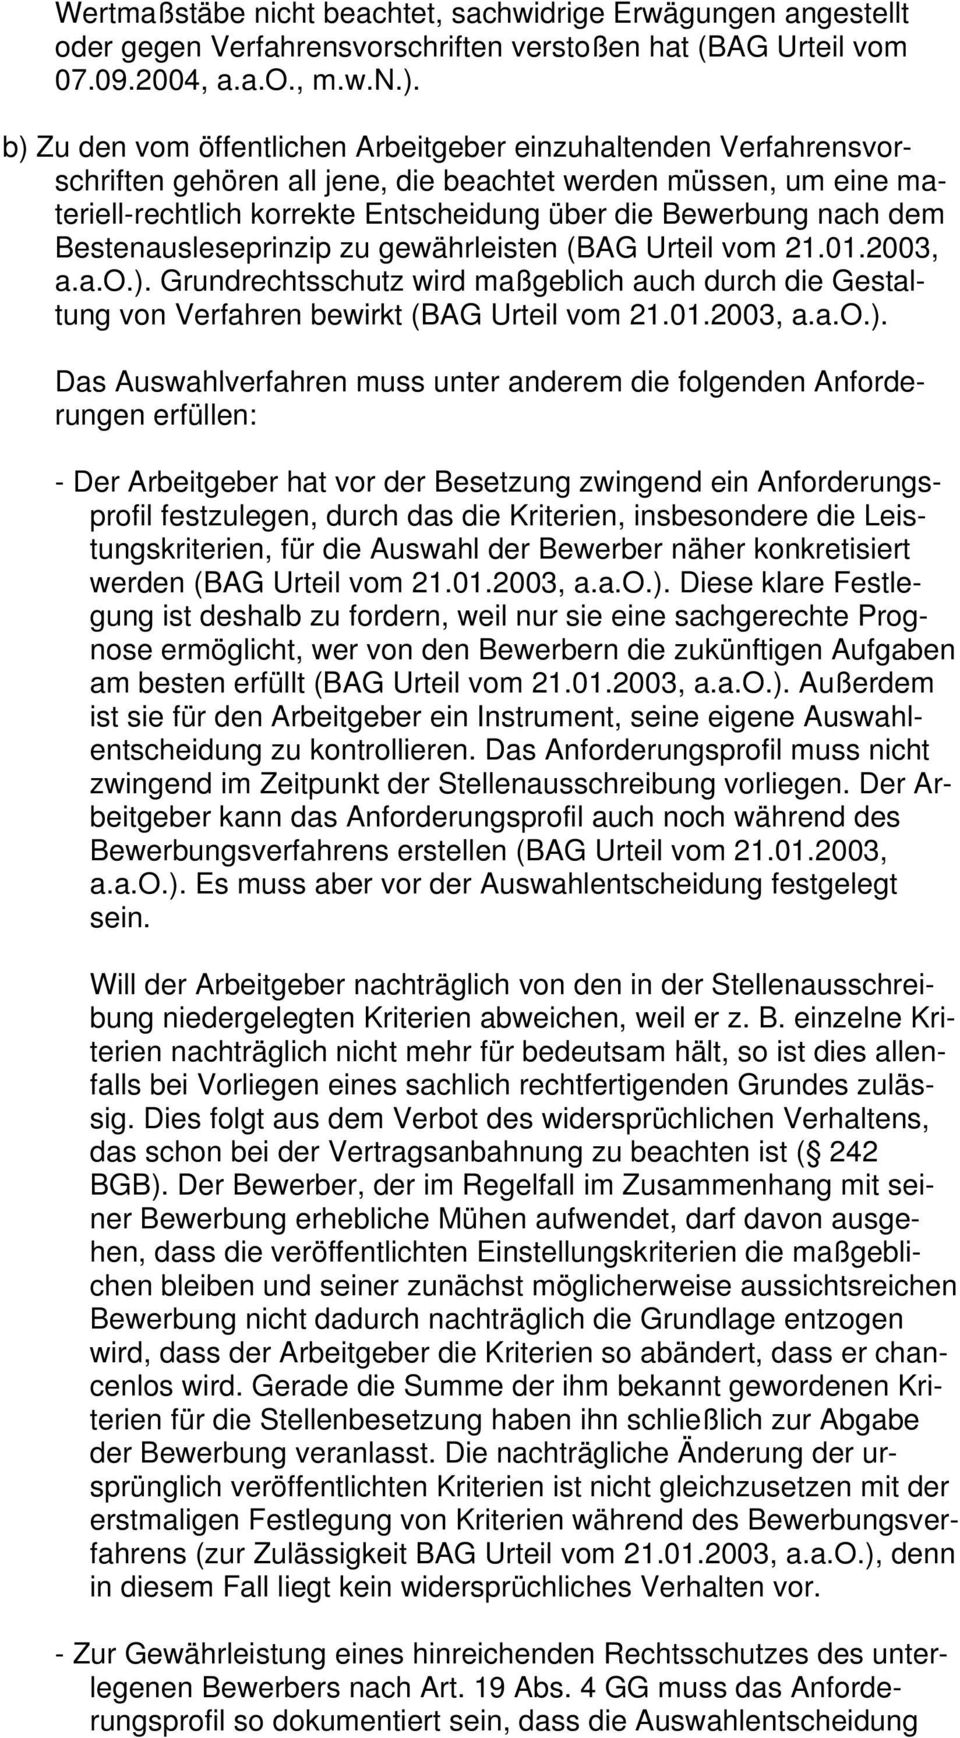 dem Bestenausleseprinzip zu gewährleisten (BAG Urteil vom 21.01.2003, a.a.o.).